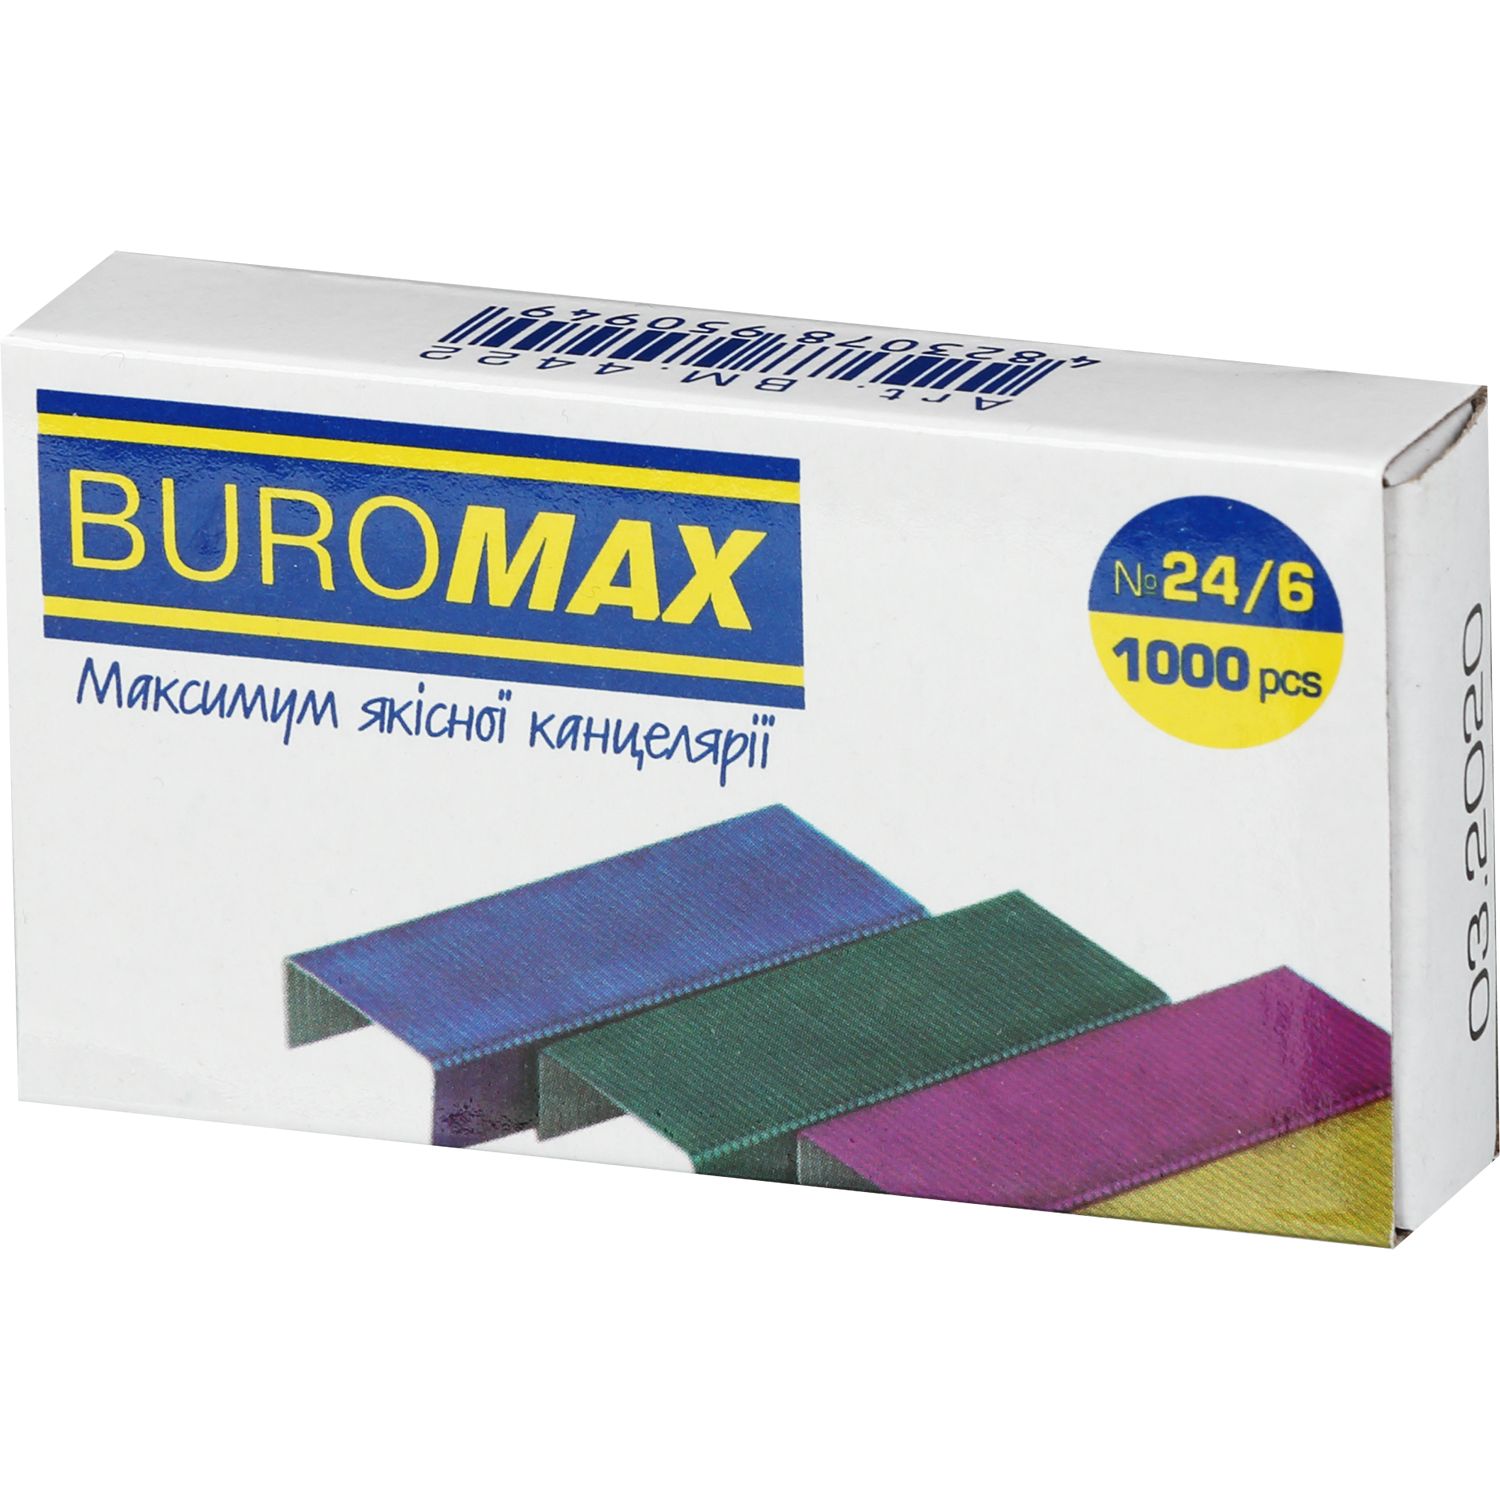 Скоби для степлерів Buromax кольорові №24/6 1000 шт. (BM.4422) - фото 1